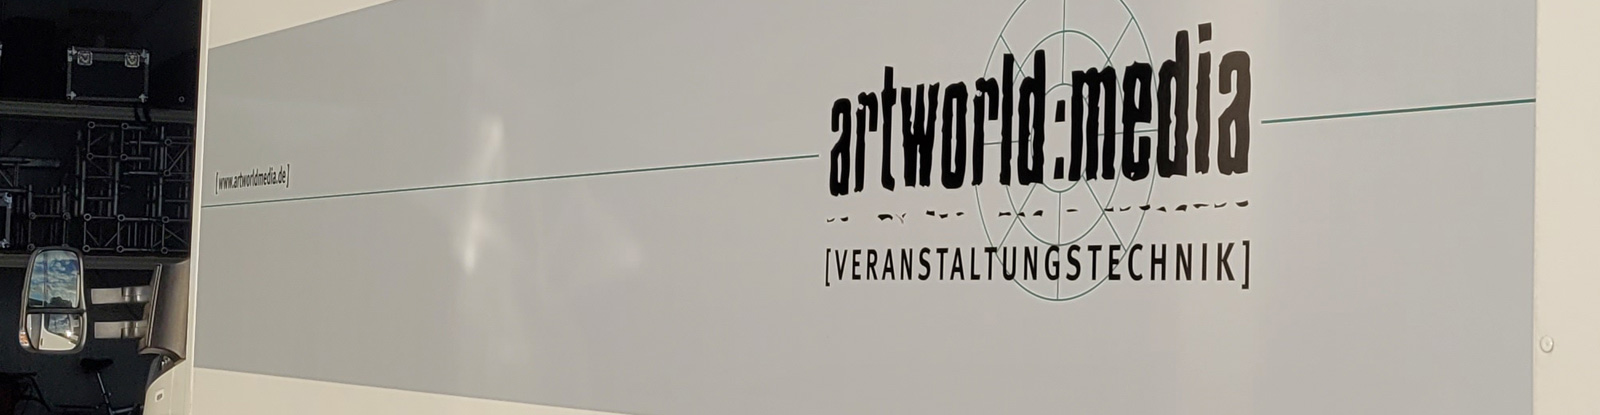 Iveco Daily LKW 7,2t zur Vermietung in unserem Materialpool - Eventtechnik und Veranstaltungstechnik artworld:media